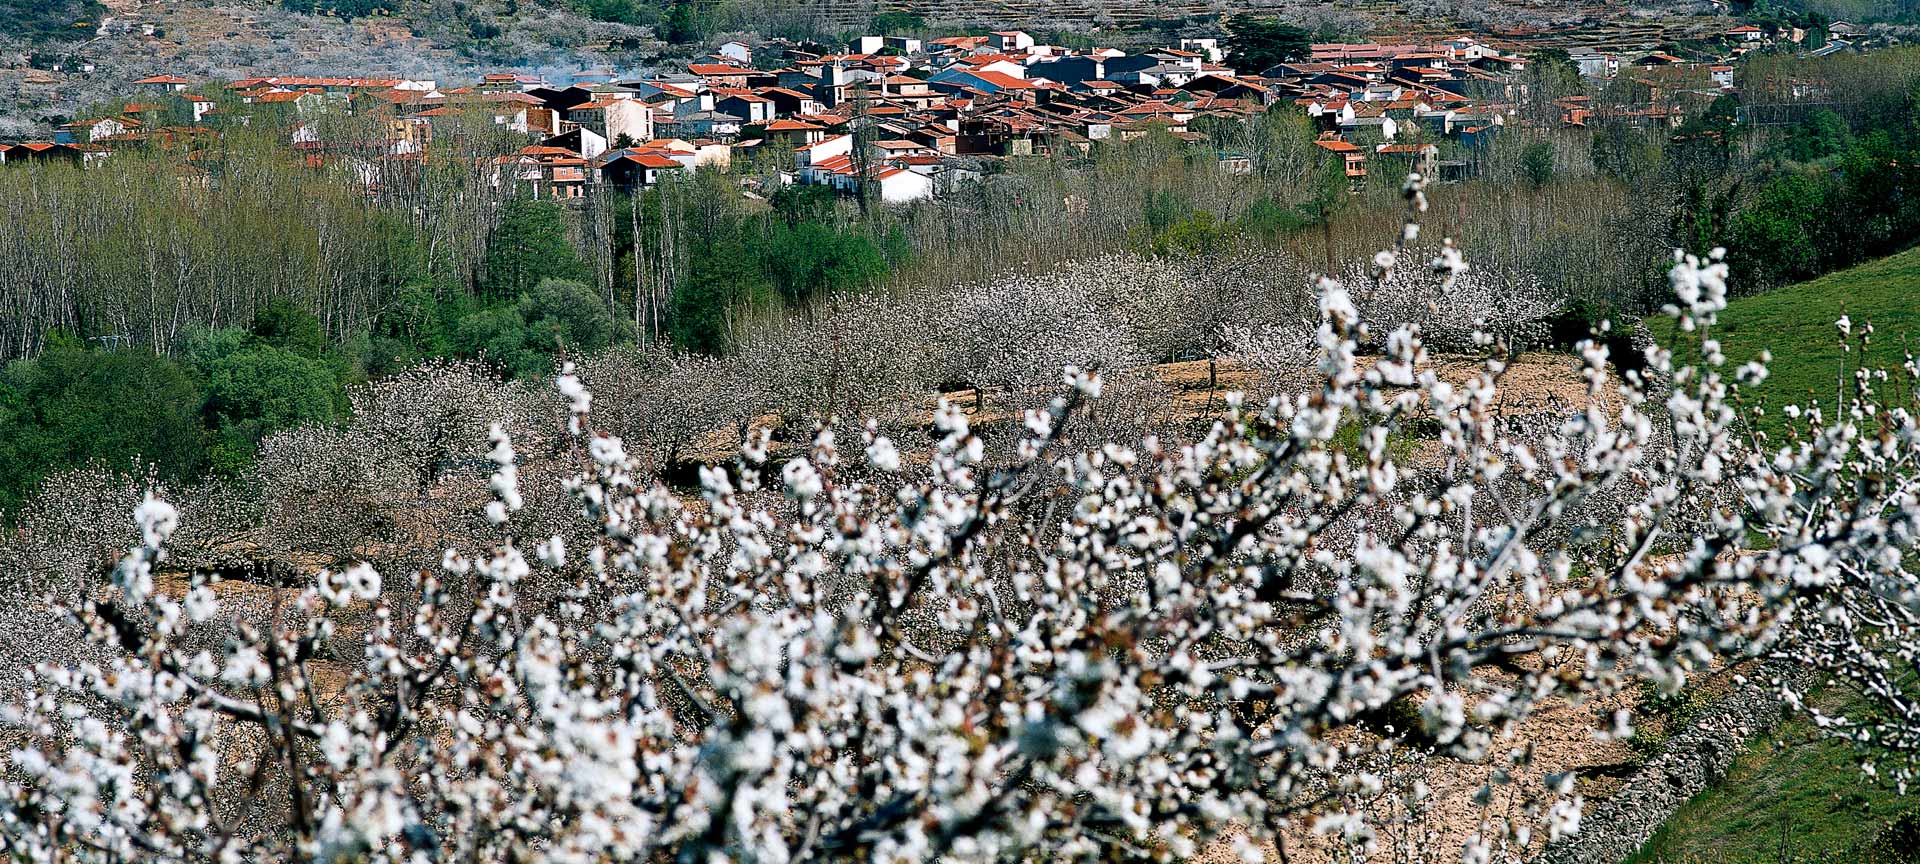 Jerte Valley (Cáceres)